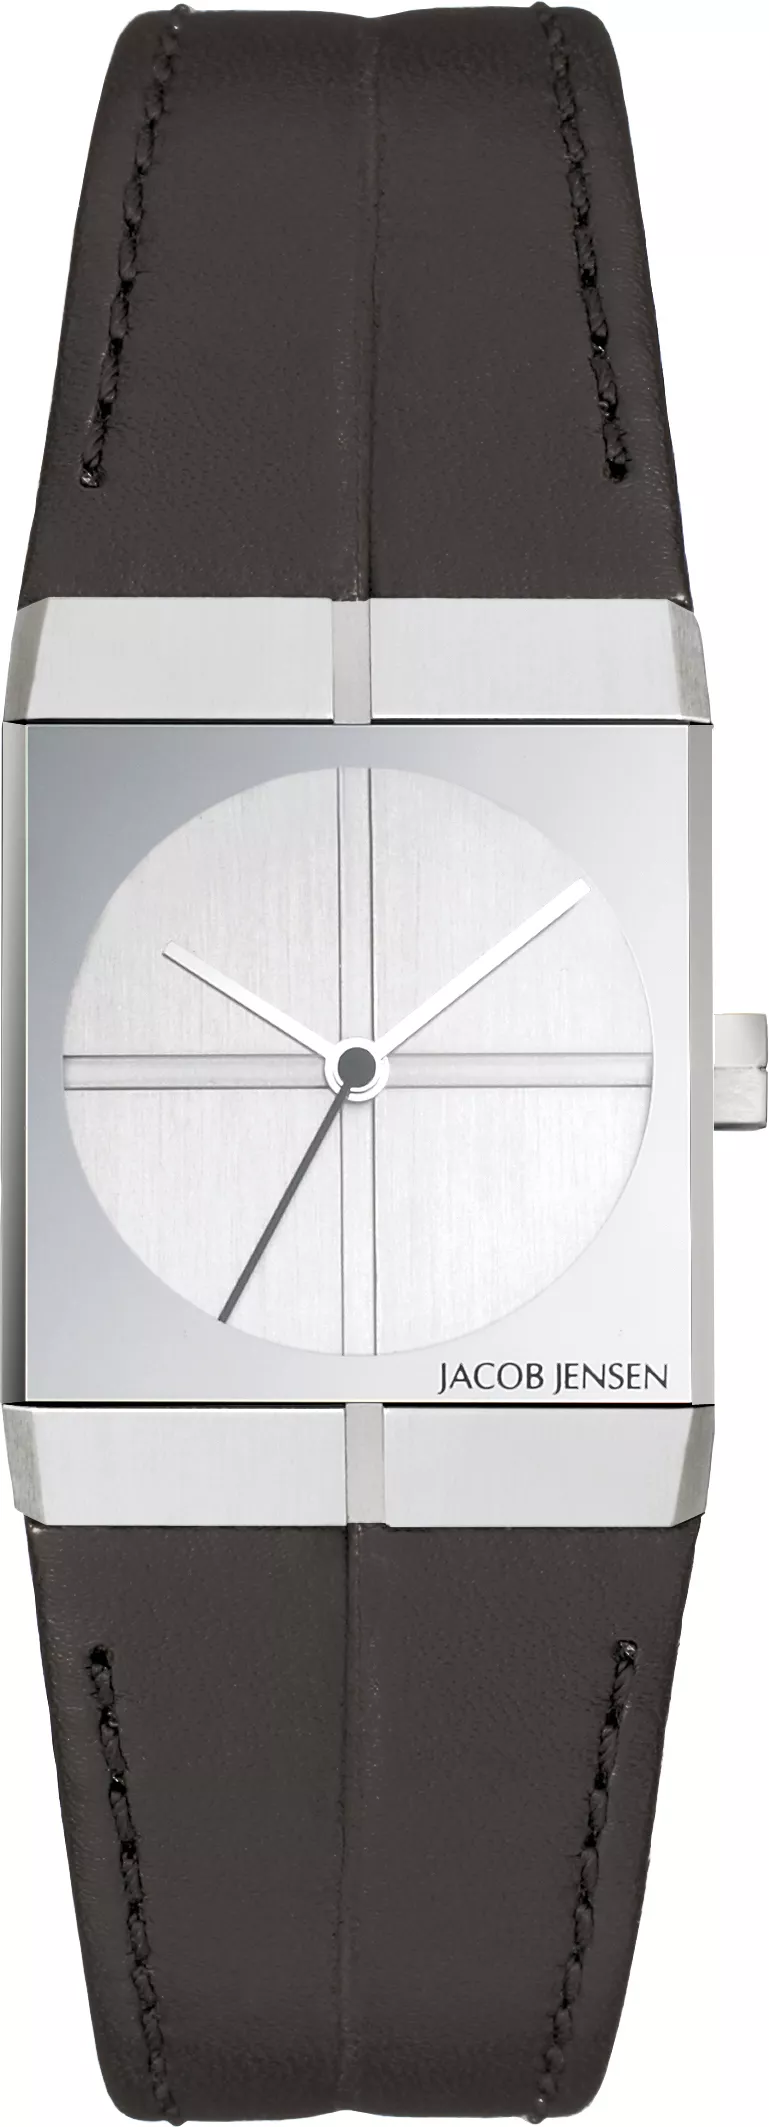 Jacob Jensen 242 Horloge icon saffierglas 22 mm